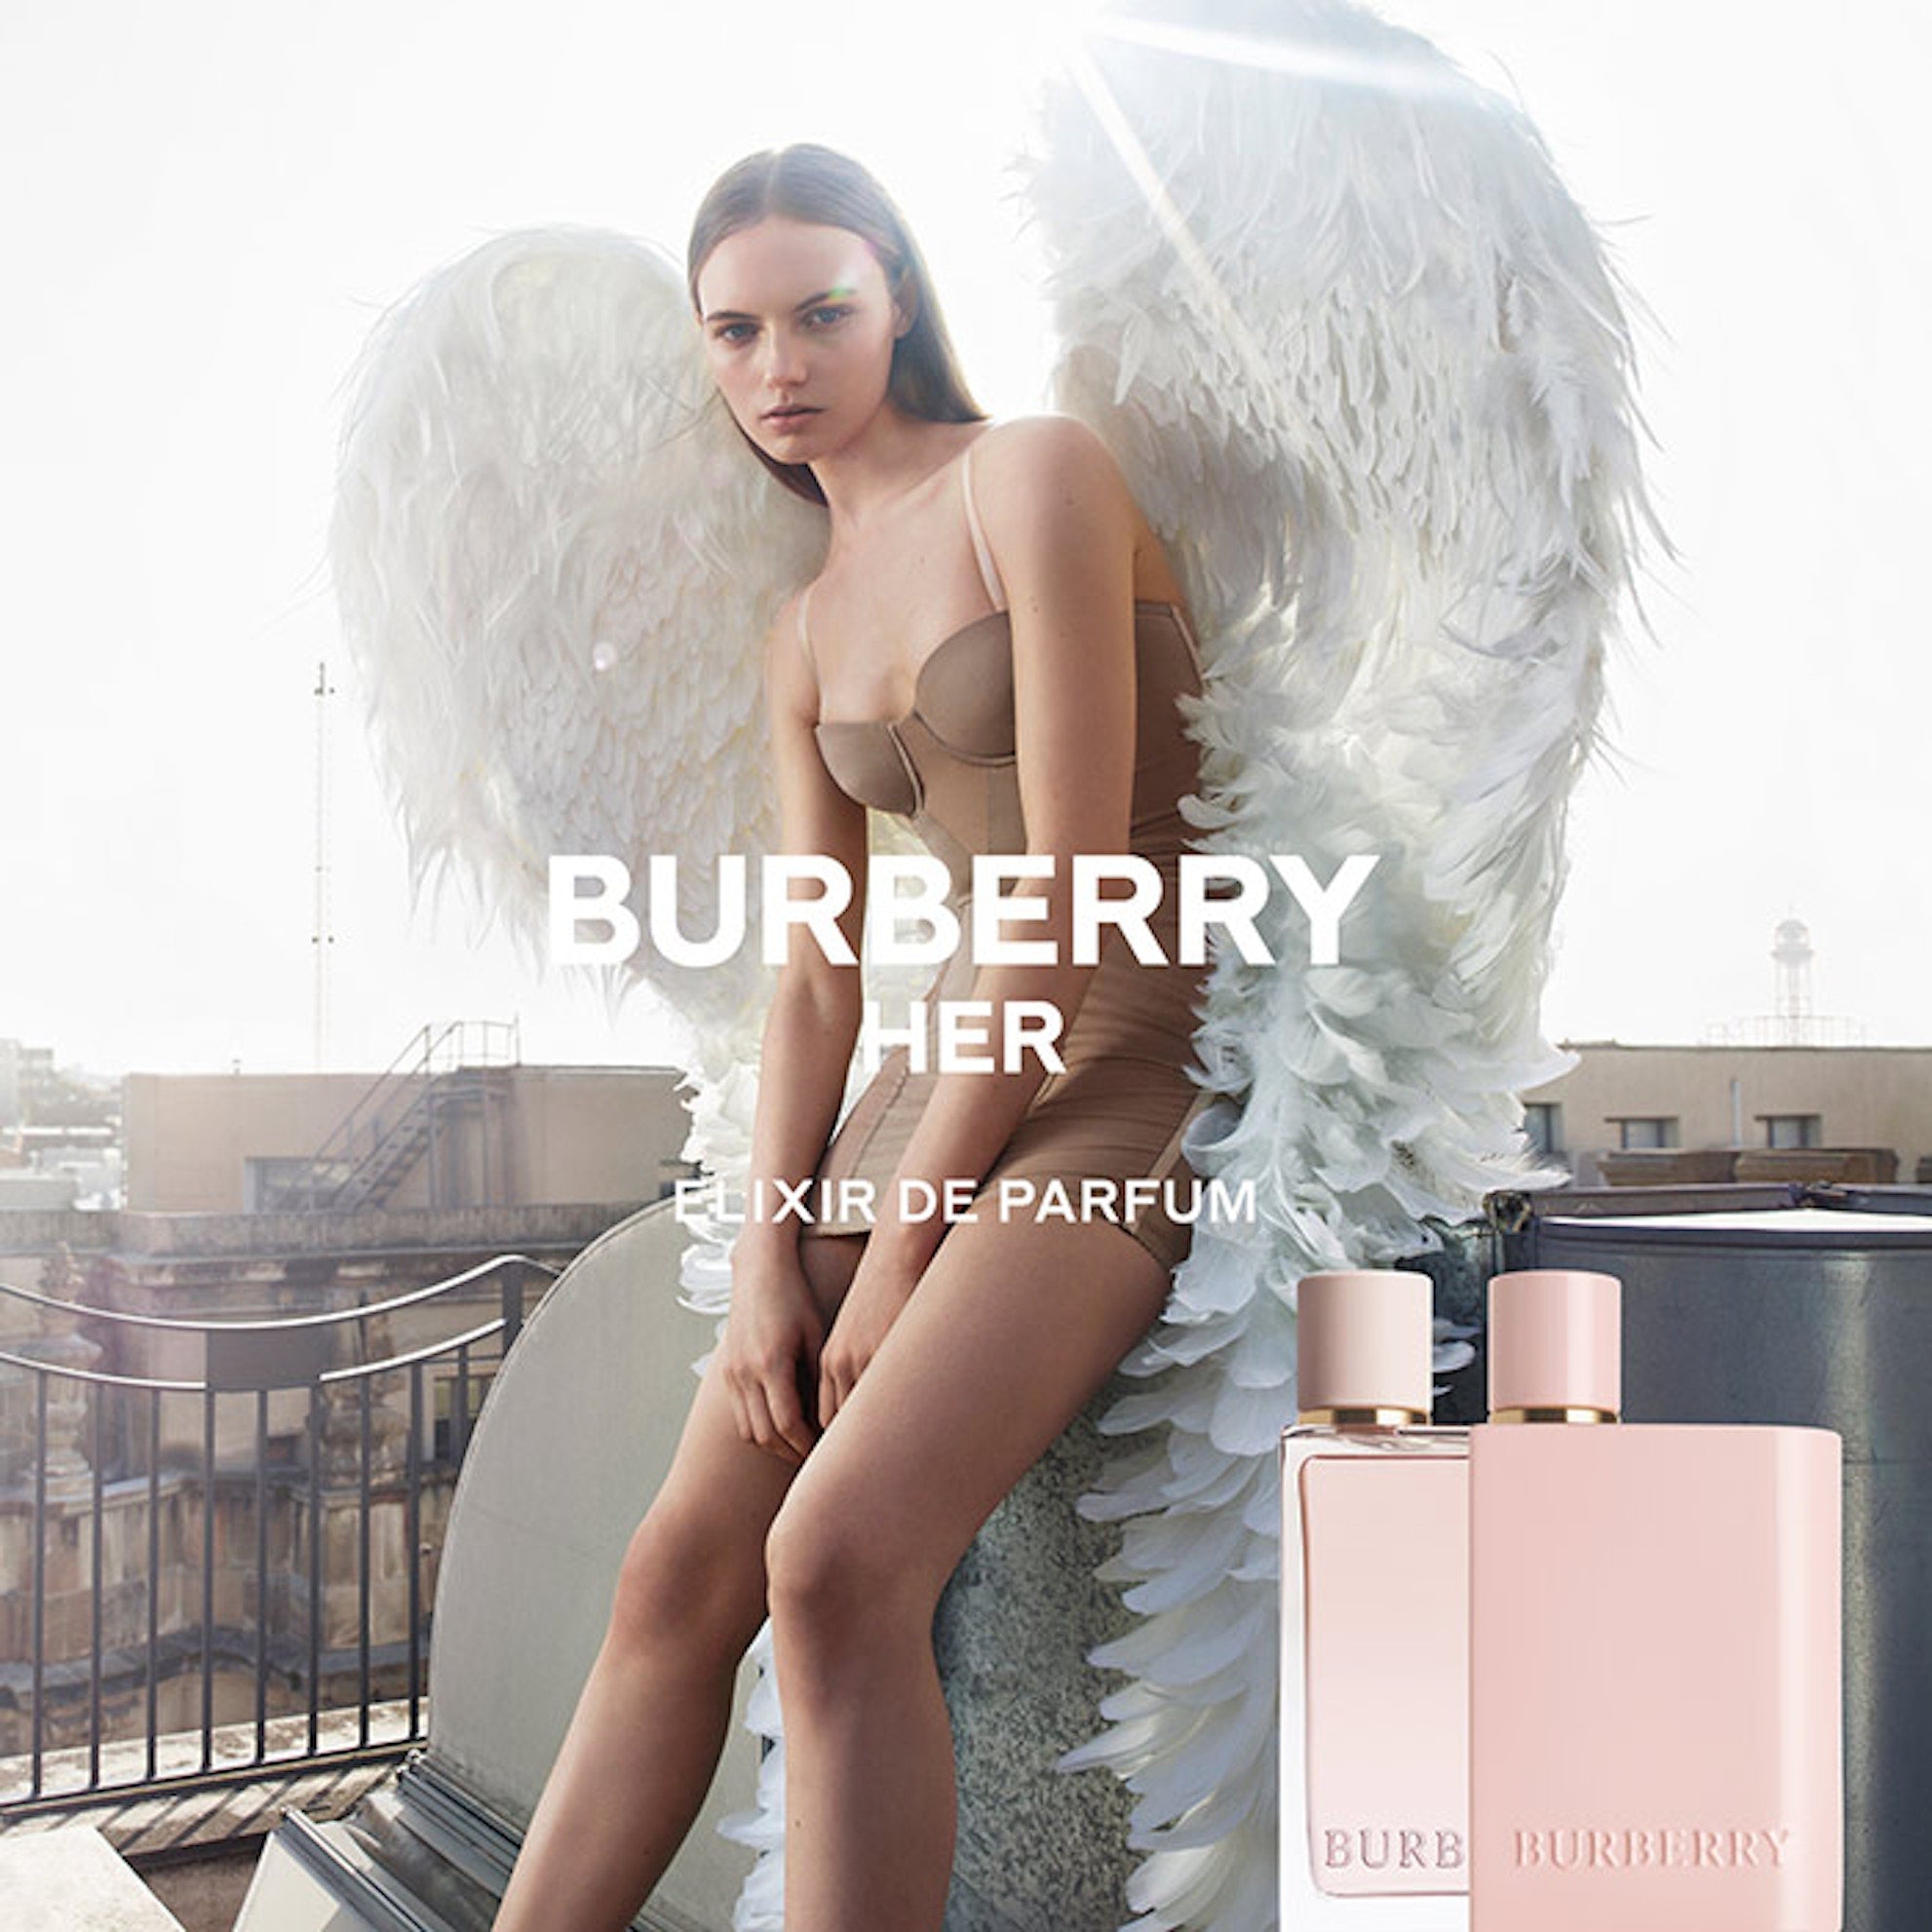 Burberry Her Elixir de Parfum Intense EDP (L) 100ml| Ramfa Beauty